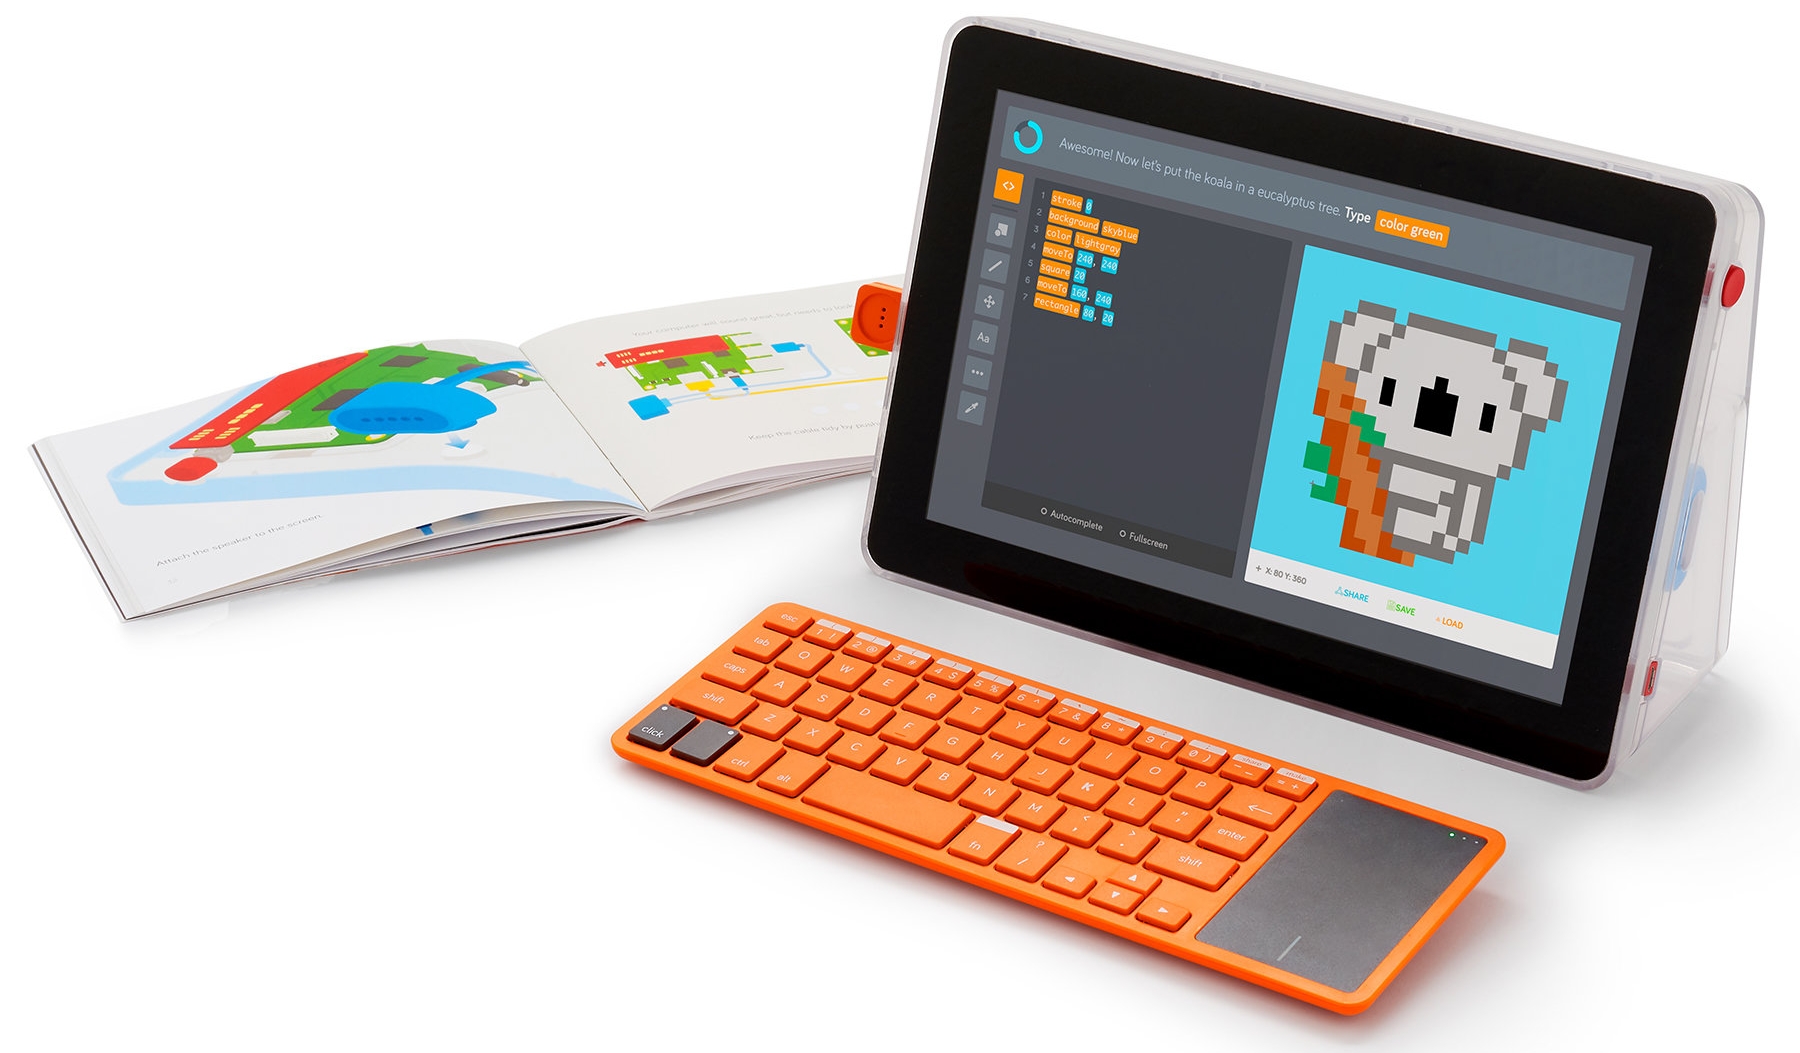 La start up anglaise spécialisée dans l'informatique pour enfants s'associe à Microsoft pour proposer un PC en kit sous Windows 10S